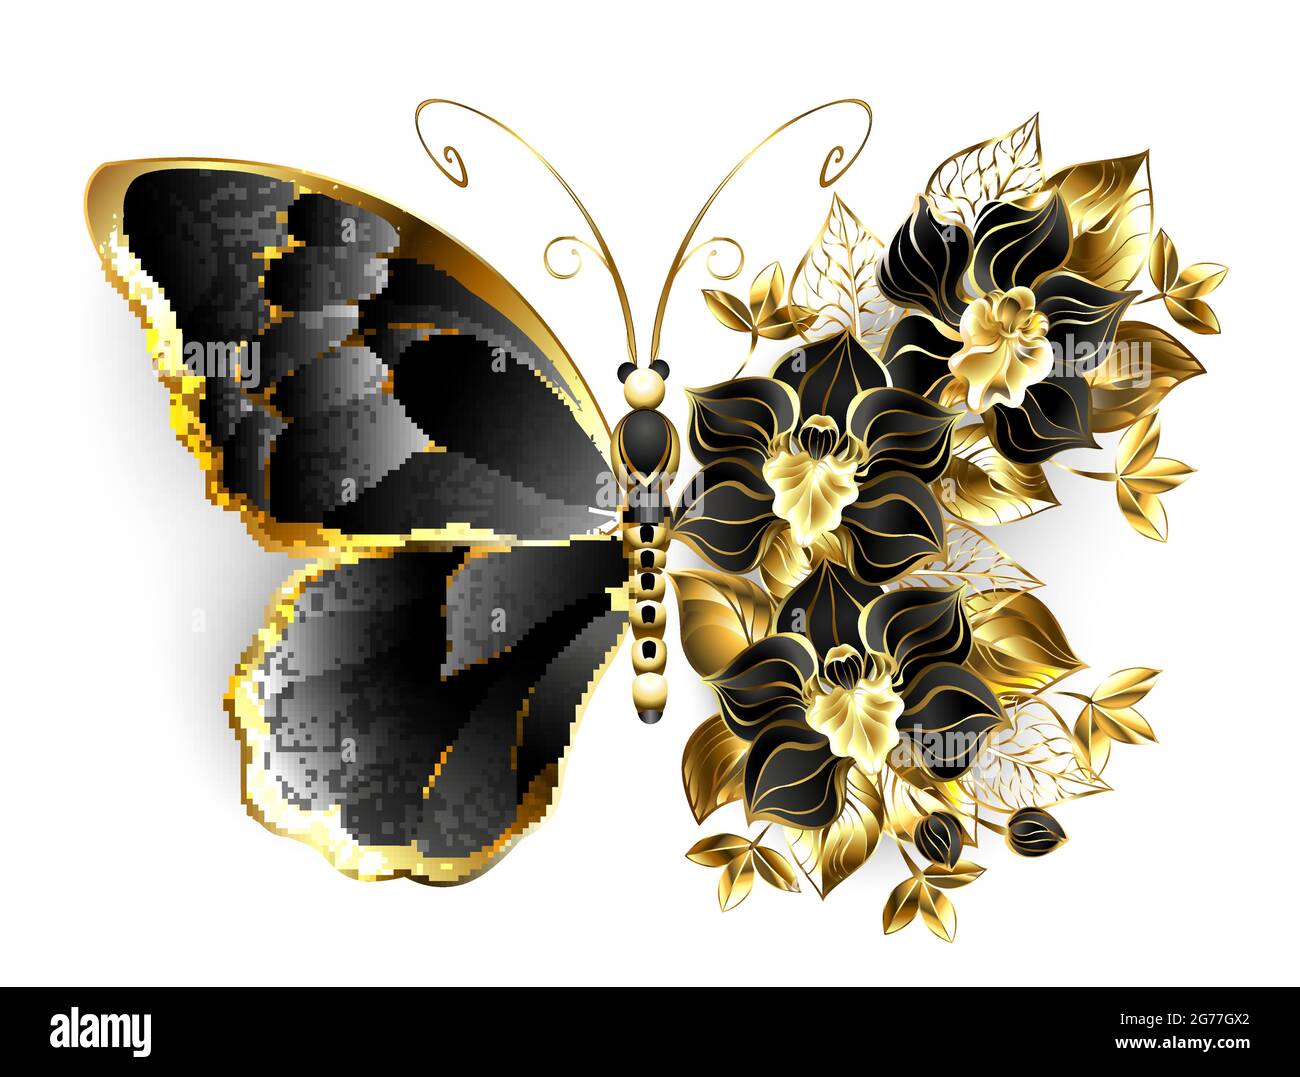 Farfalla fiorita in oro con orchidea nera, decorata con foglie d'oro su sfondo bianco. Illustrazione Vettoriale